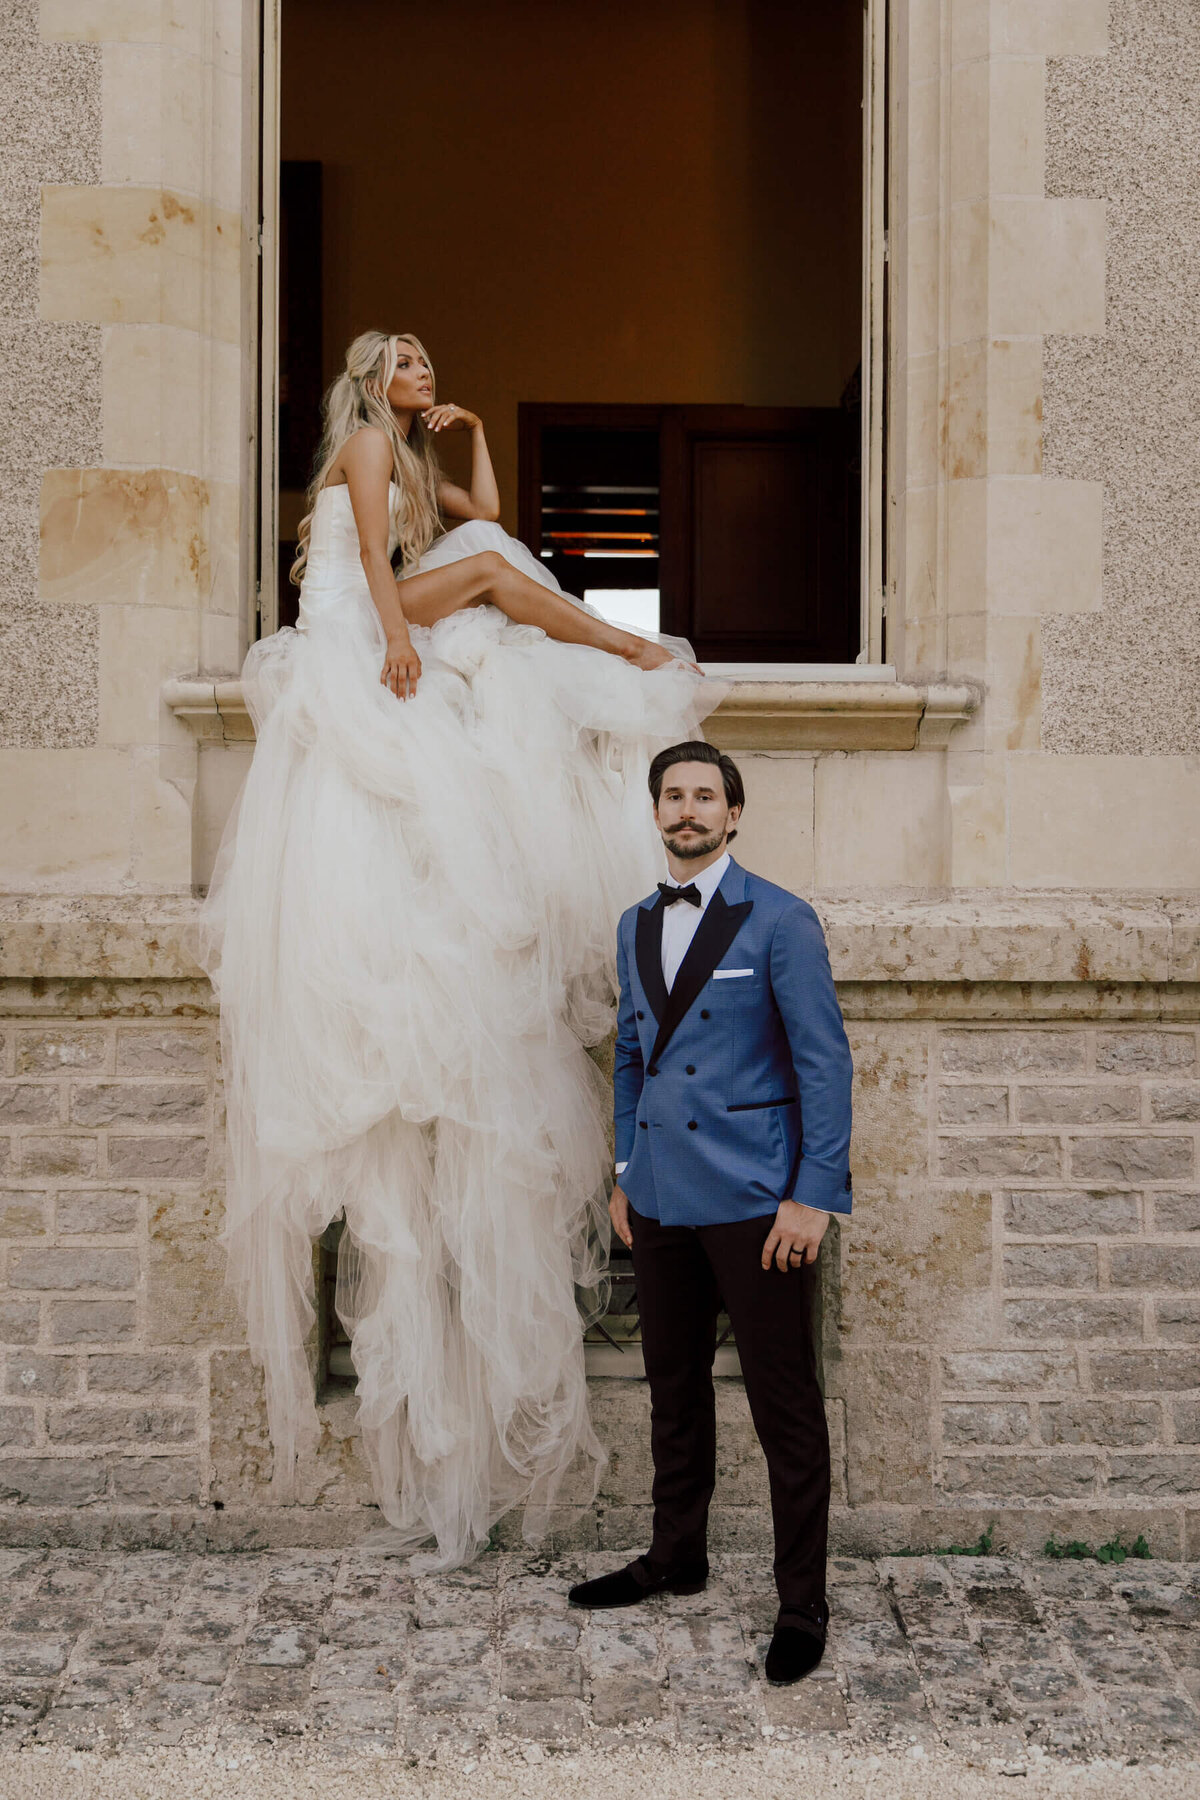 Erin Alvey Filip Forsberg marry at private castle in France